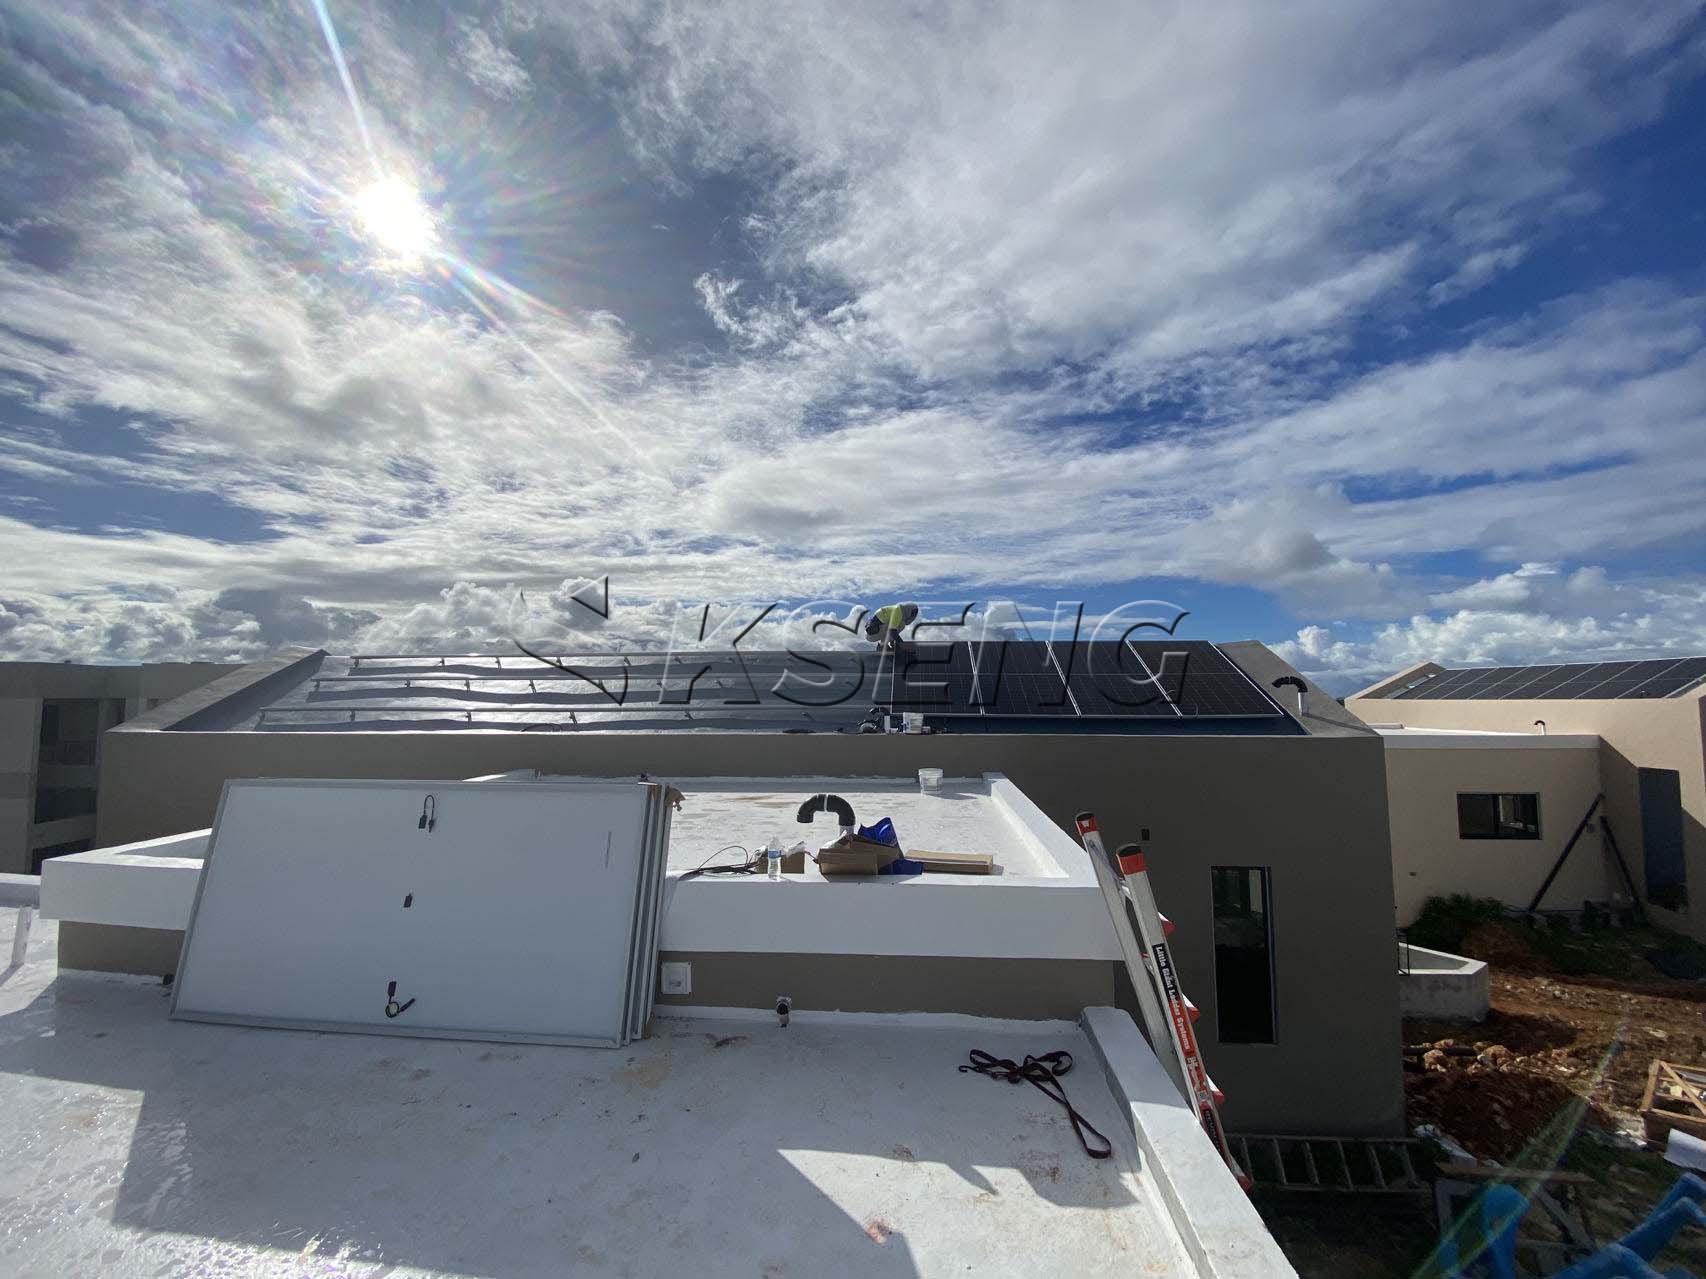 Soluzione solare sul tetto negli Stati Uniti